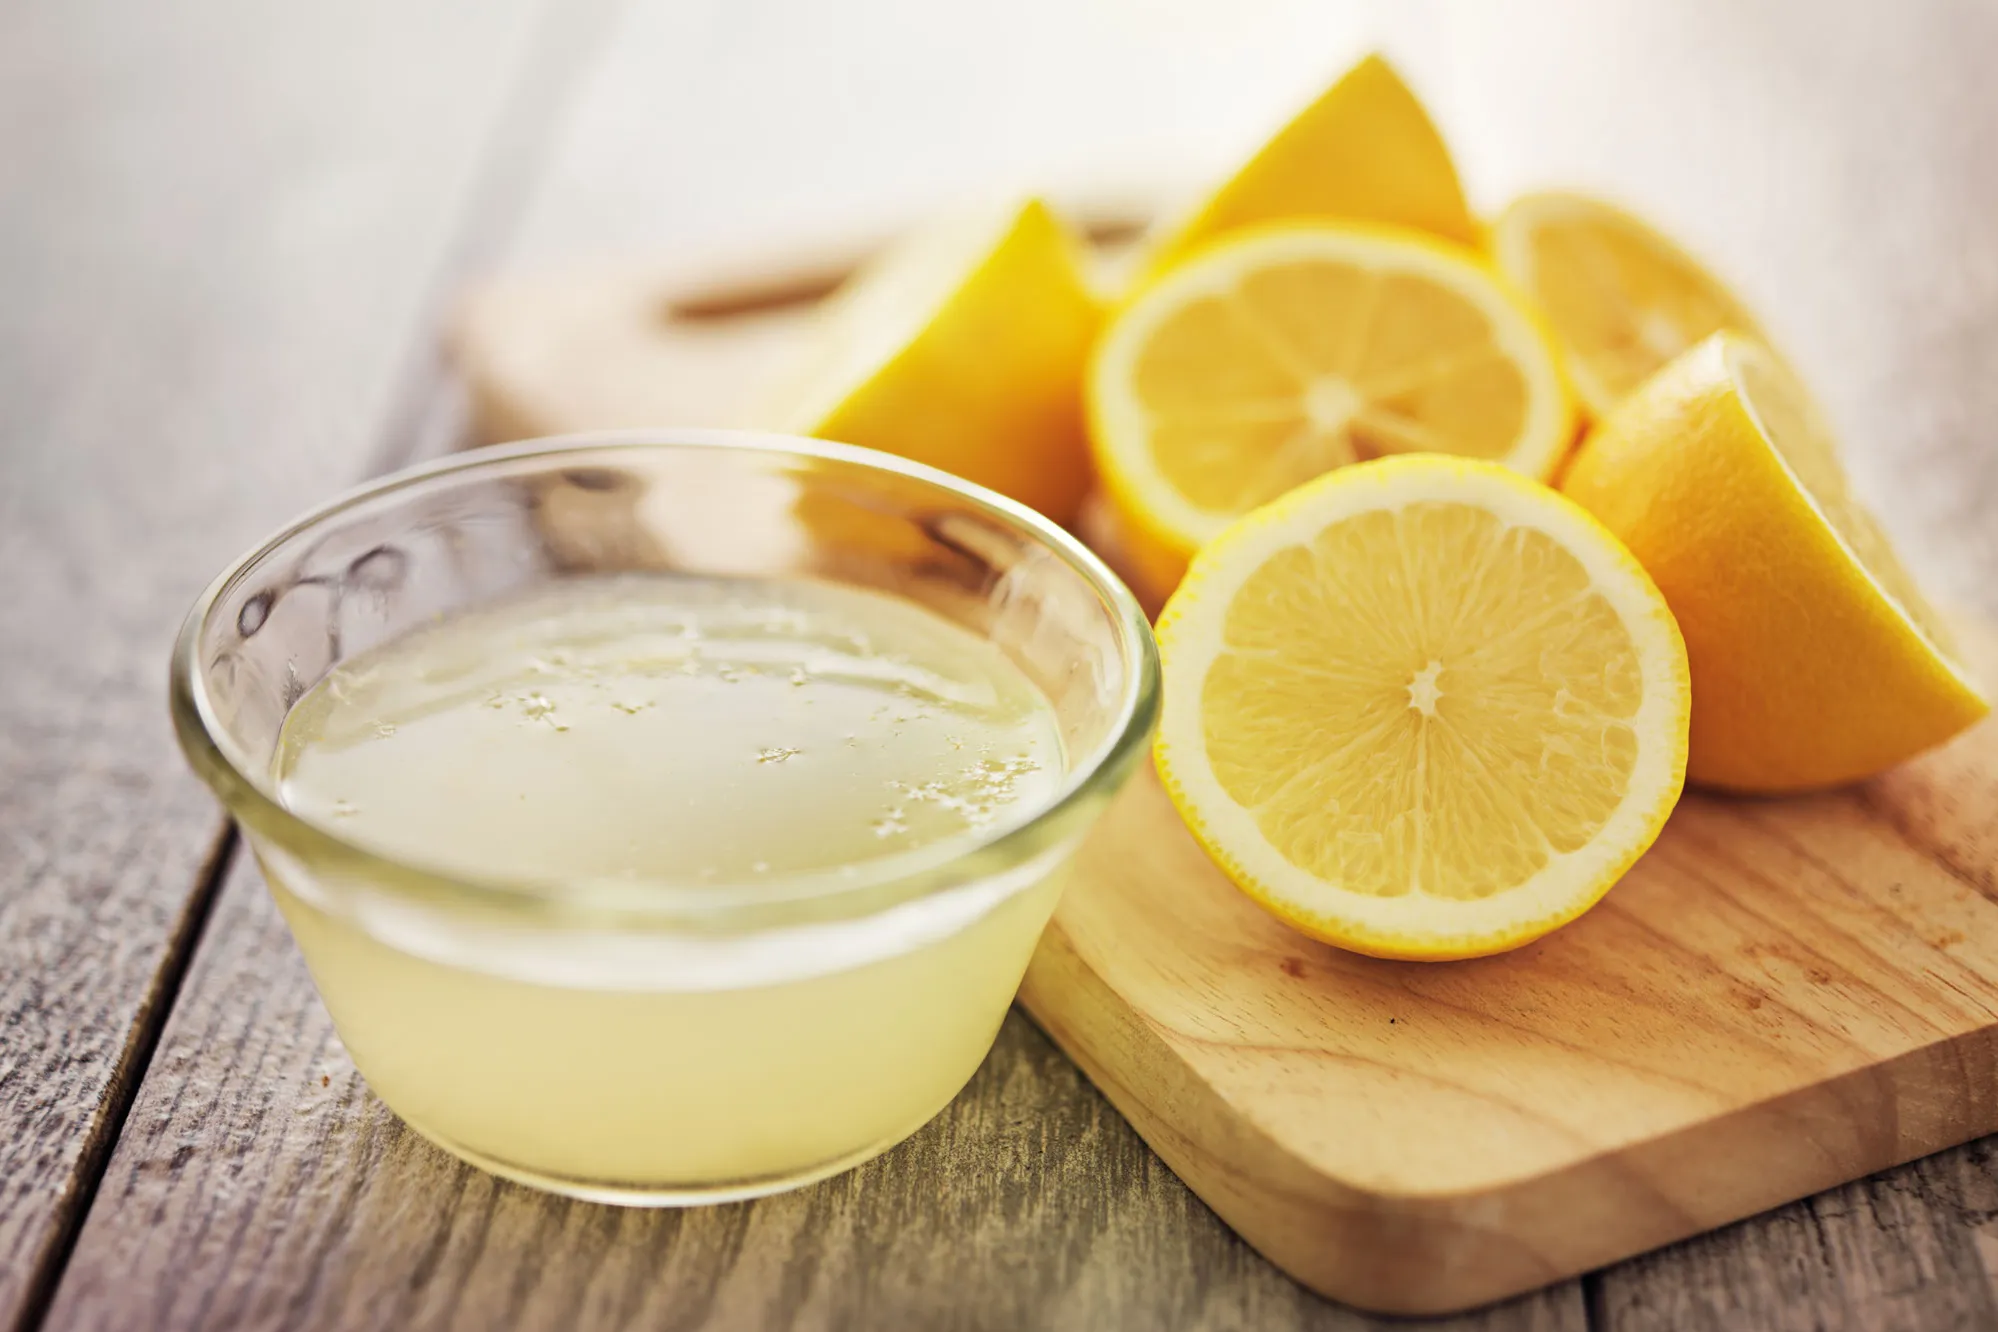 الطب الحديث يكشف عن فوائد الليمون